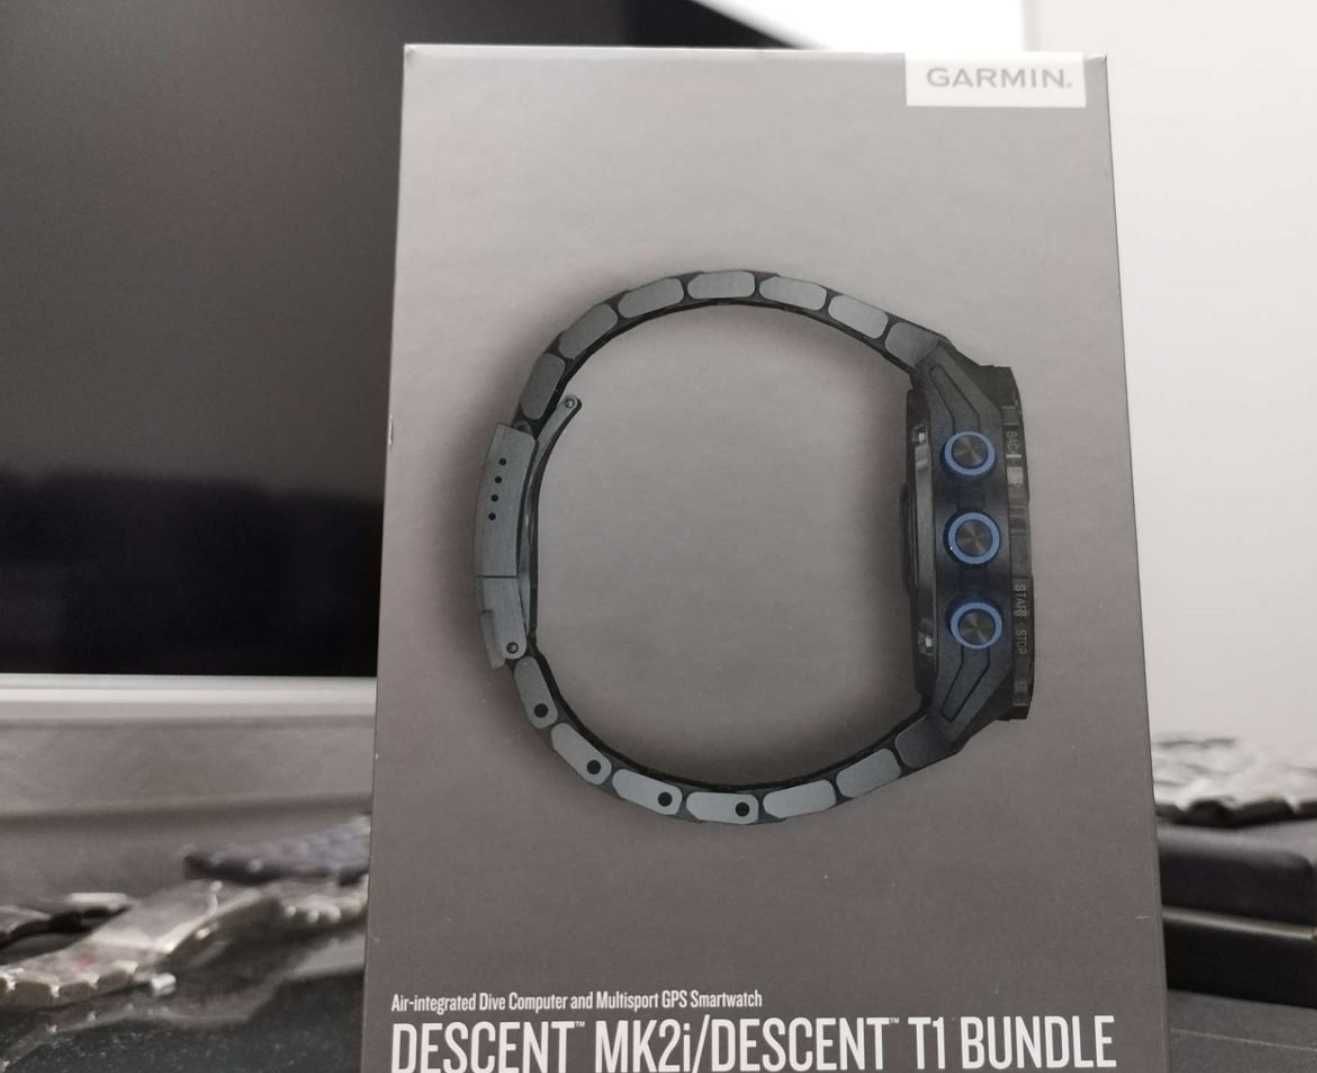 Garmin Descent MK2i + Descent T1 Bundle